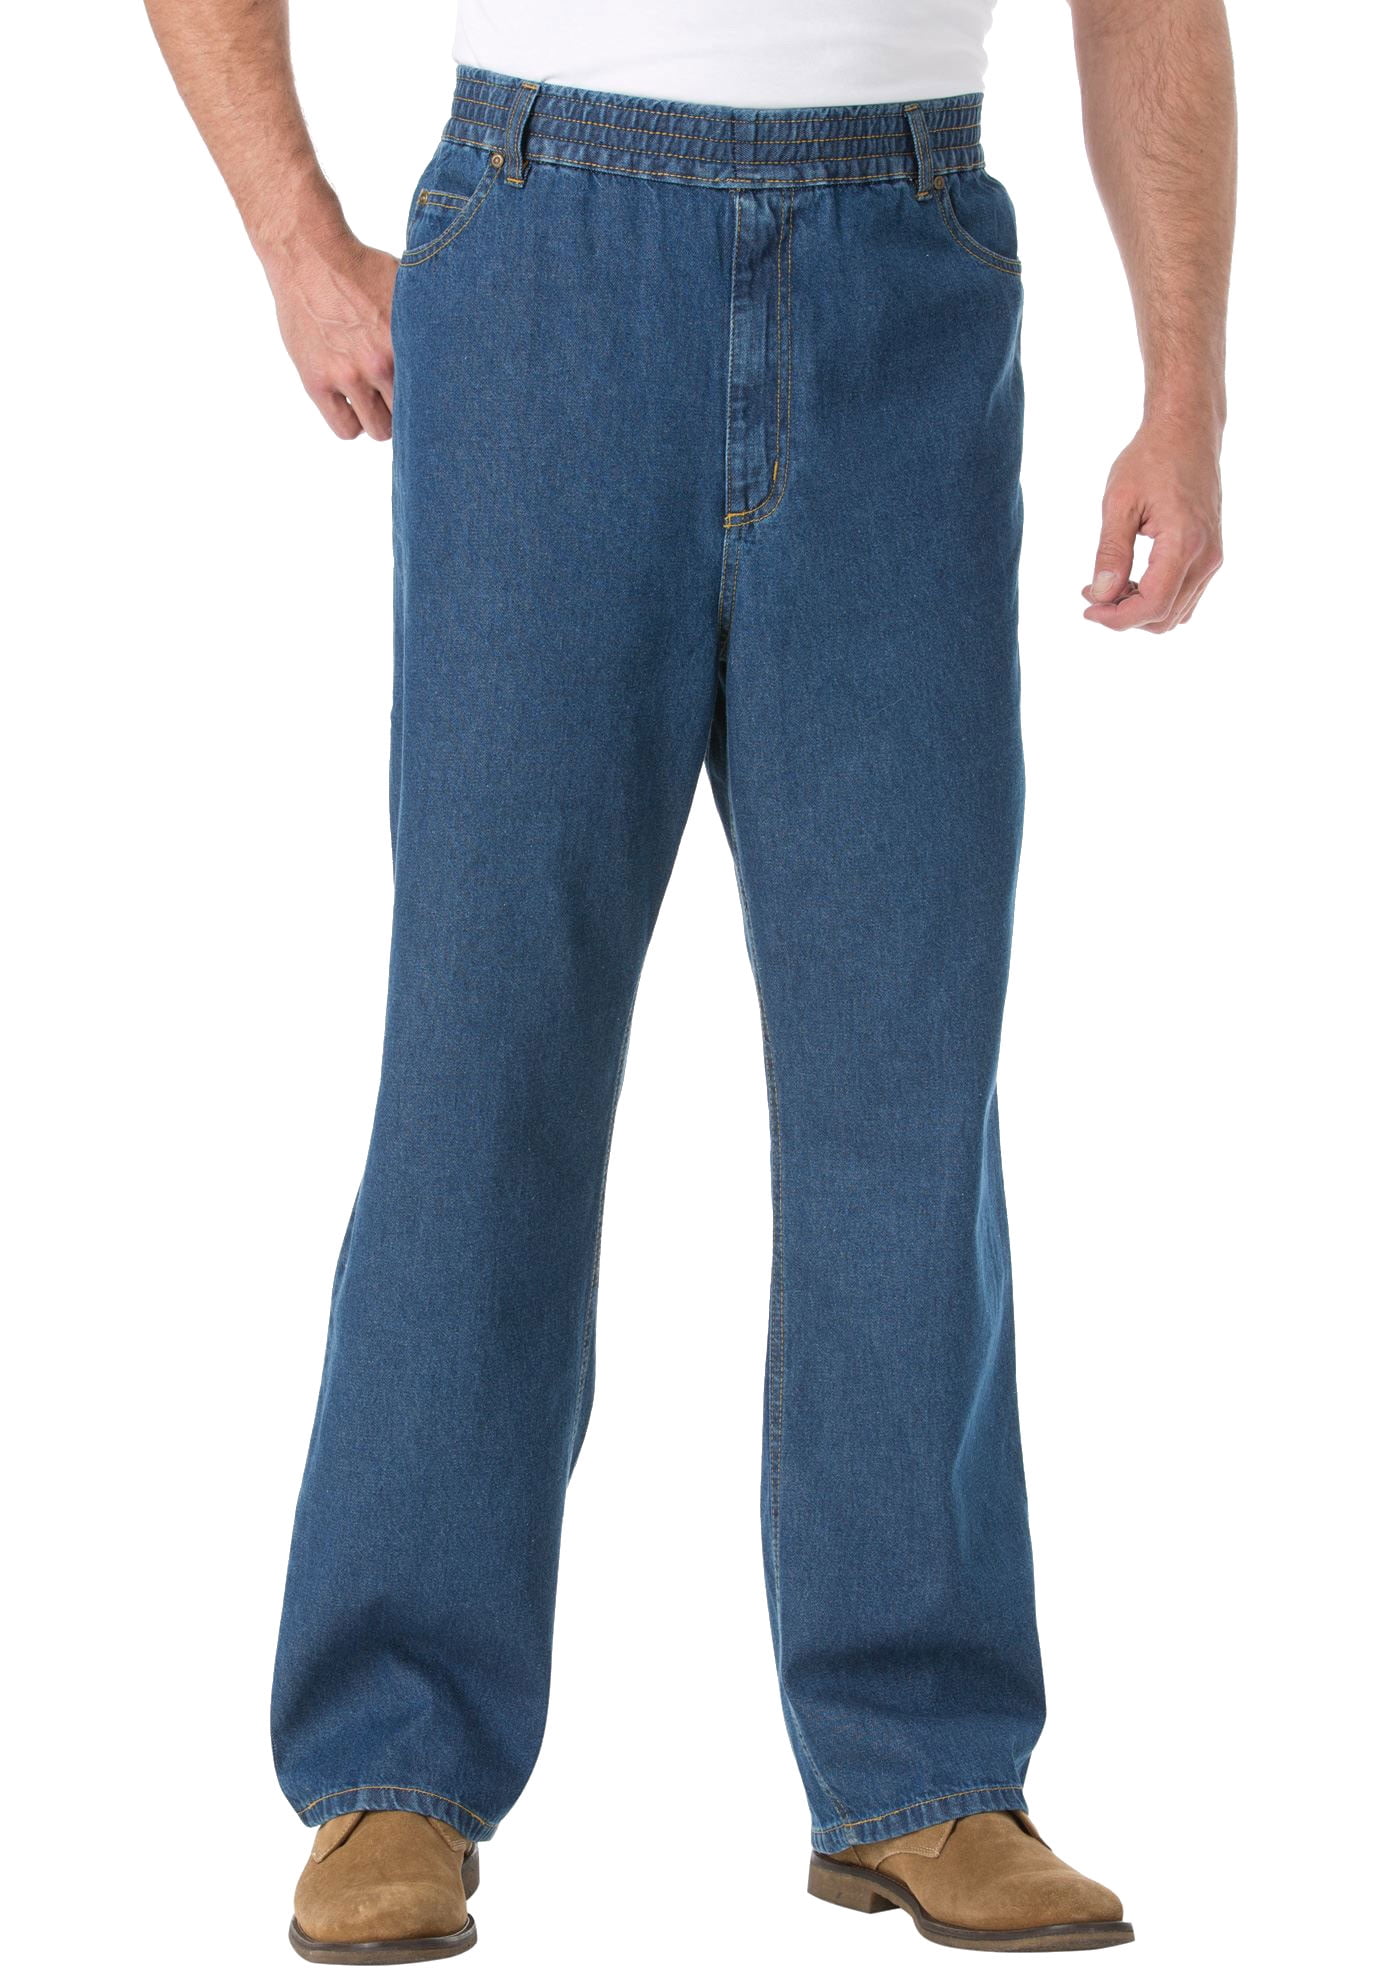 Details about   Mens Levi's 569 Denim Straight Leg Zipper Fly Jeans Multiple Sizes 